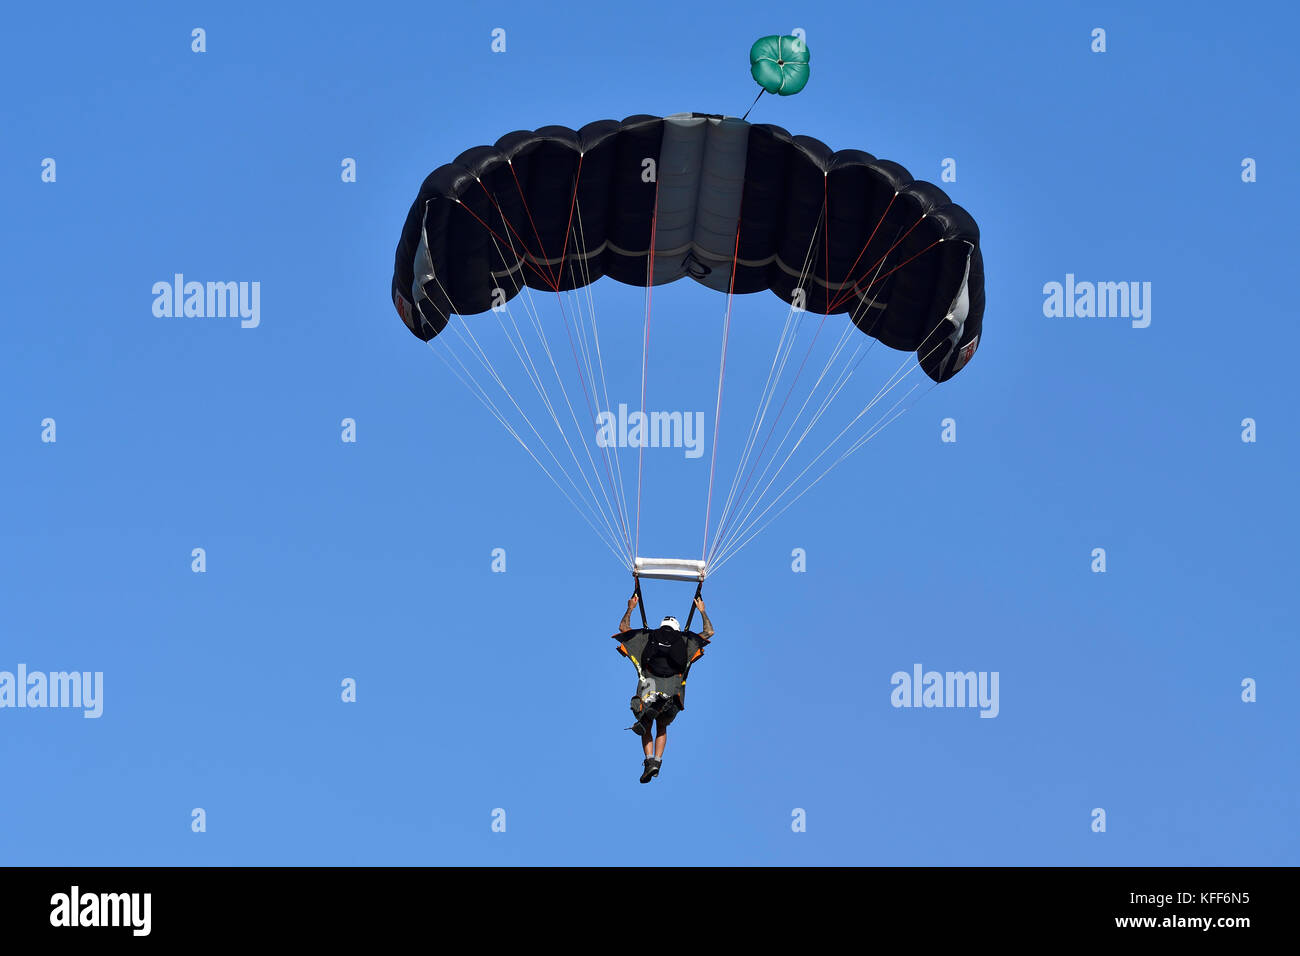 Wingsuiters di skydive attica durante il volo atene settimana 2017 air-show di tanagra Air Force Base in Grecia Foto Stock